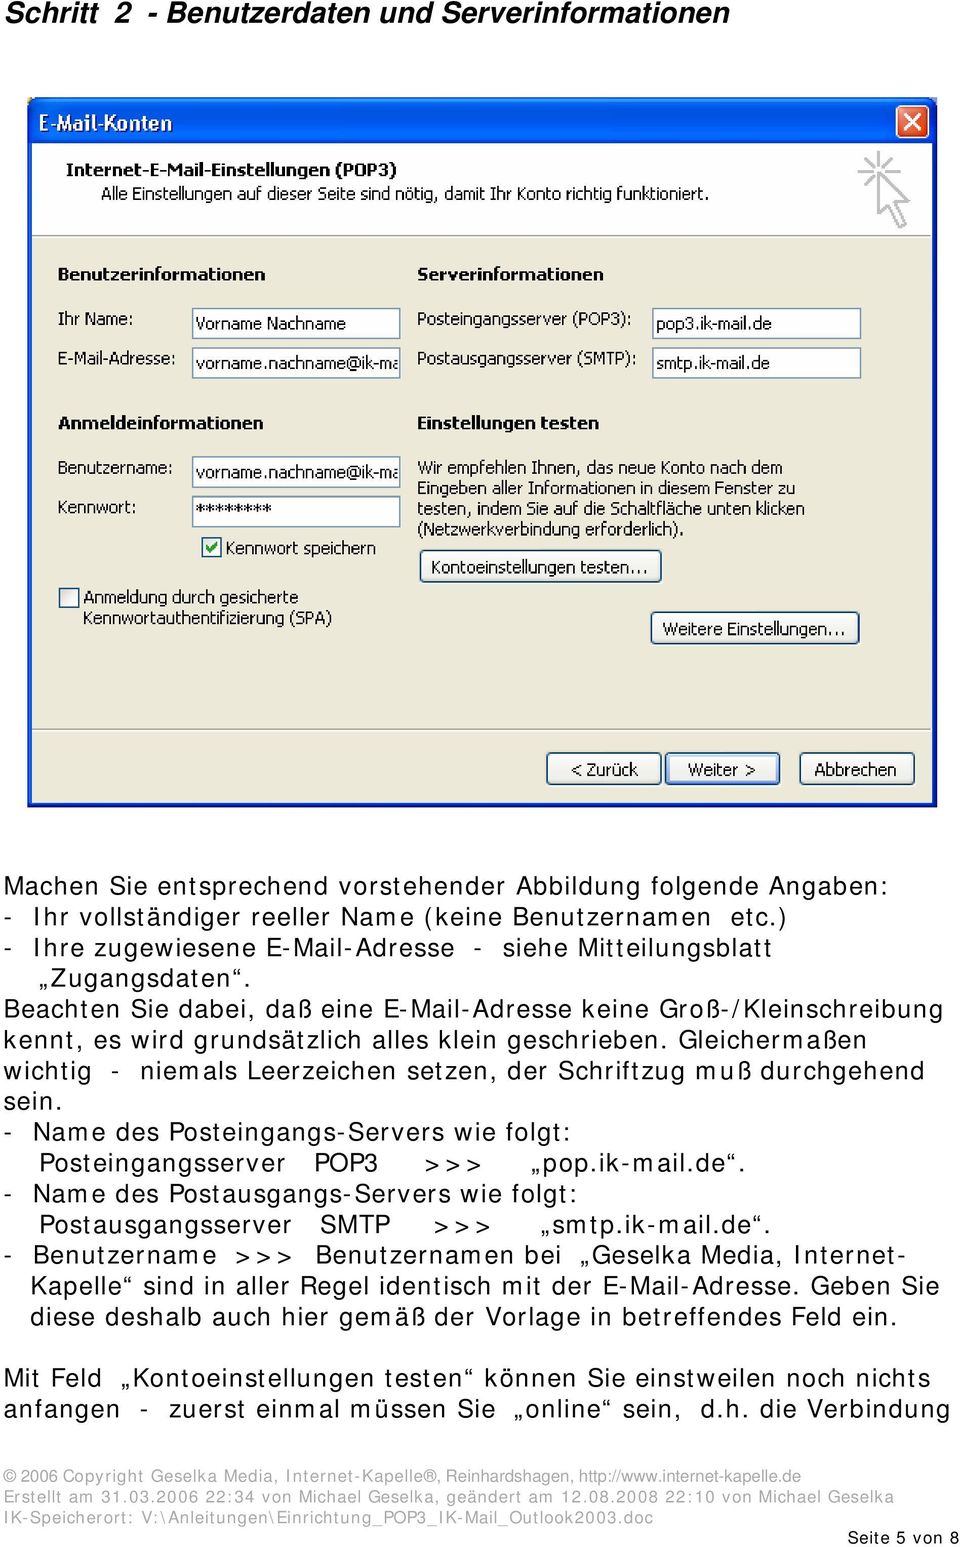 Gleichermaßen wichtig - niemals Leerzeichen setzen, der Schriftzug muß durchgehend sein. - Name des Posteingangs-Servers wie folgt: Posteingangsserver POP3 >>> pop.ik-mail.de. - Name des Postausgangs-Servers wie folgt: Postausgangsserver SMTP >>> smtp.